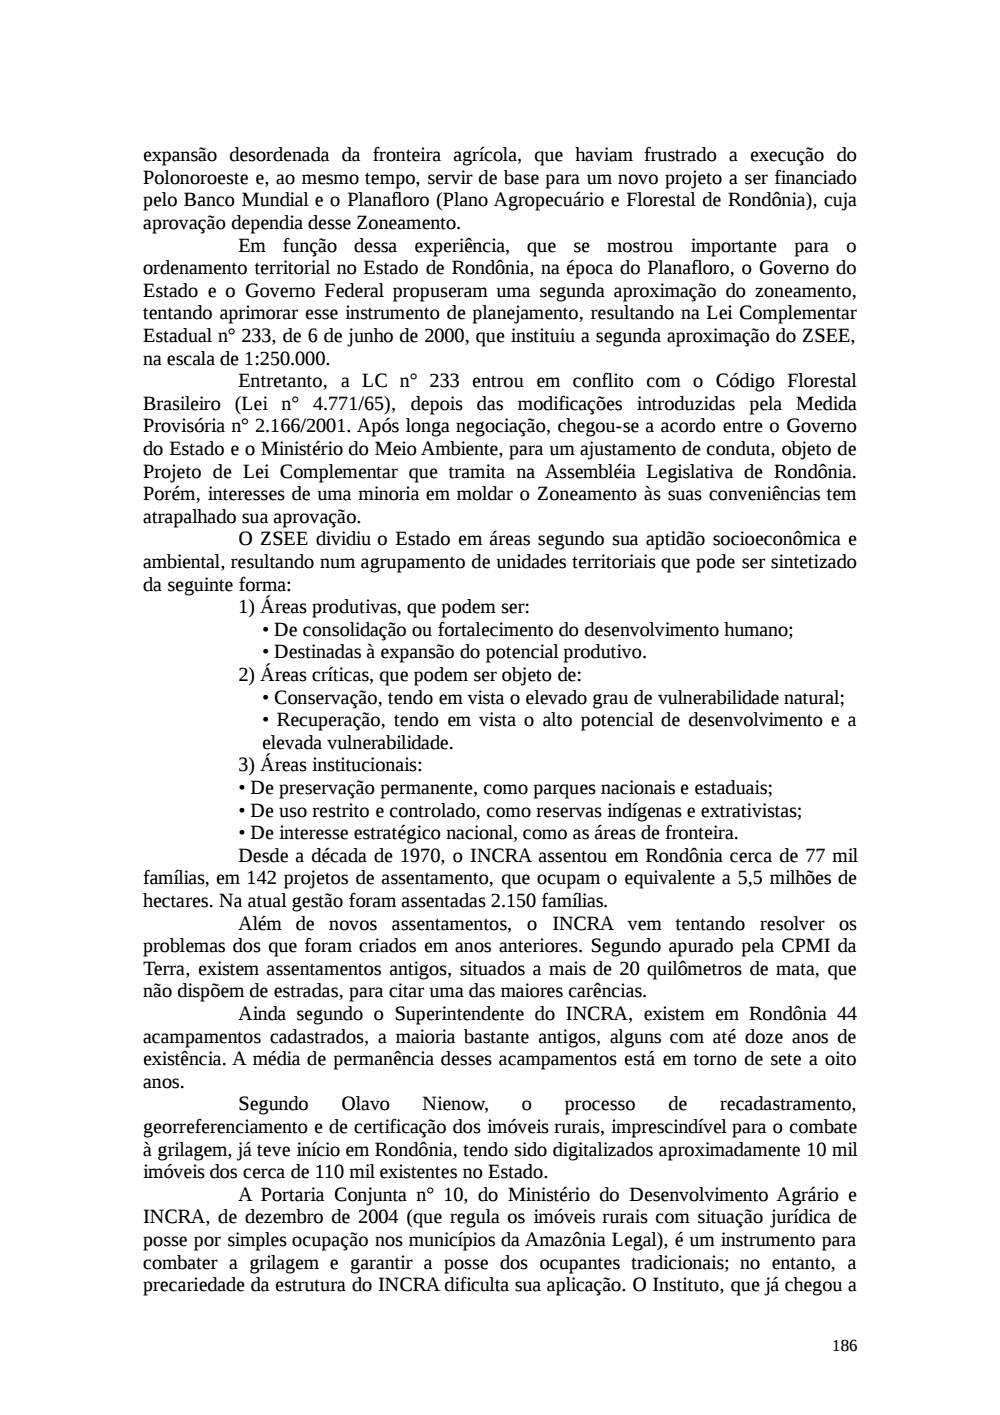 Page 186 from Relatório final da comissão